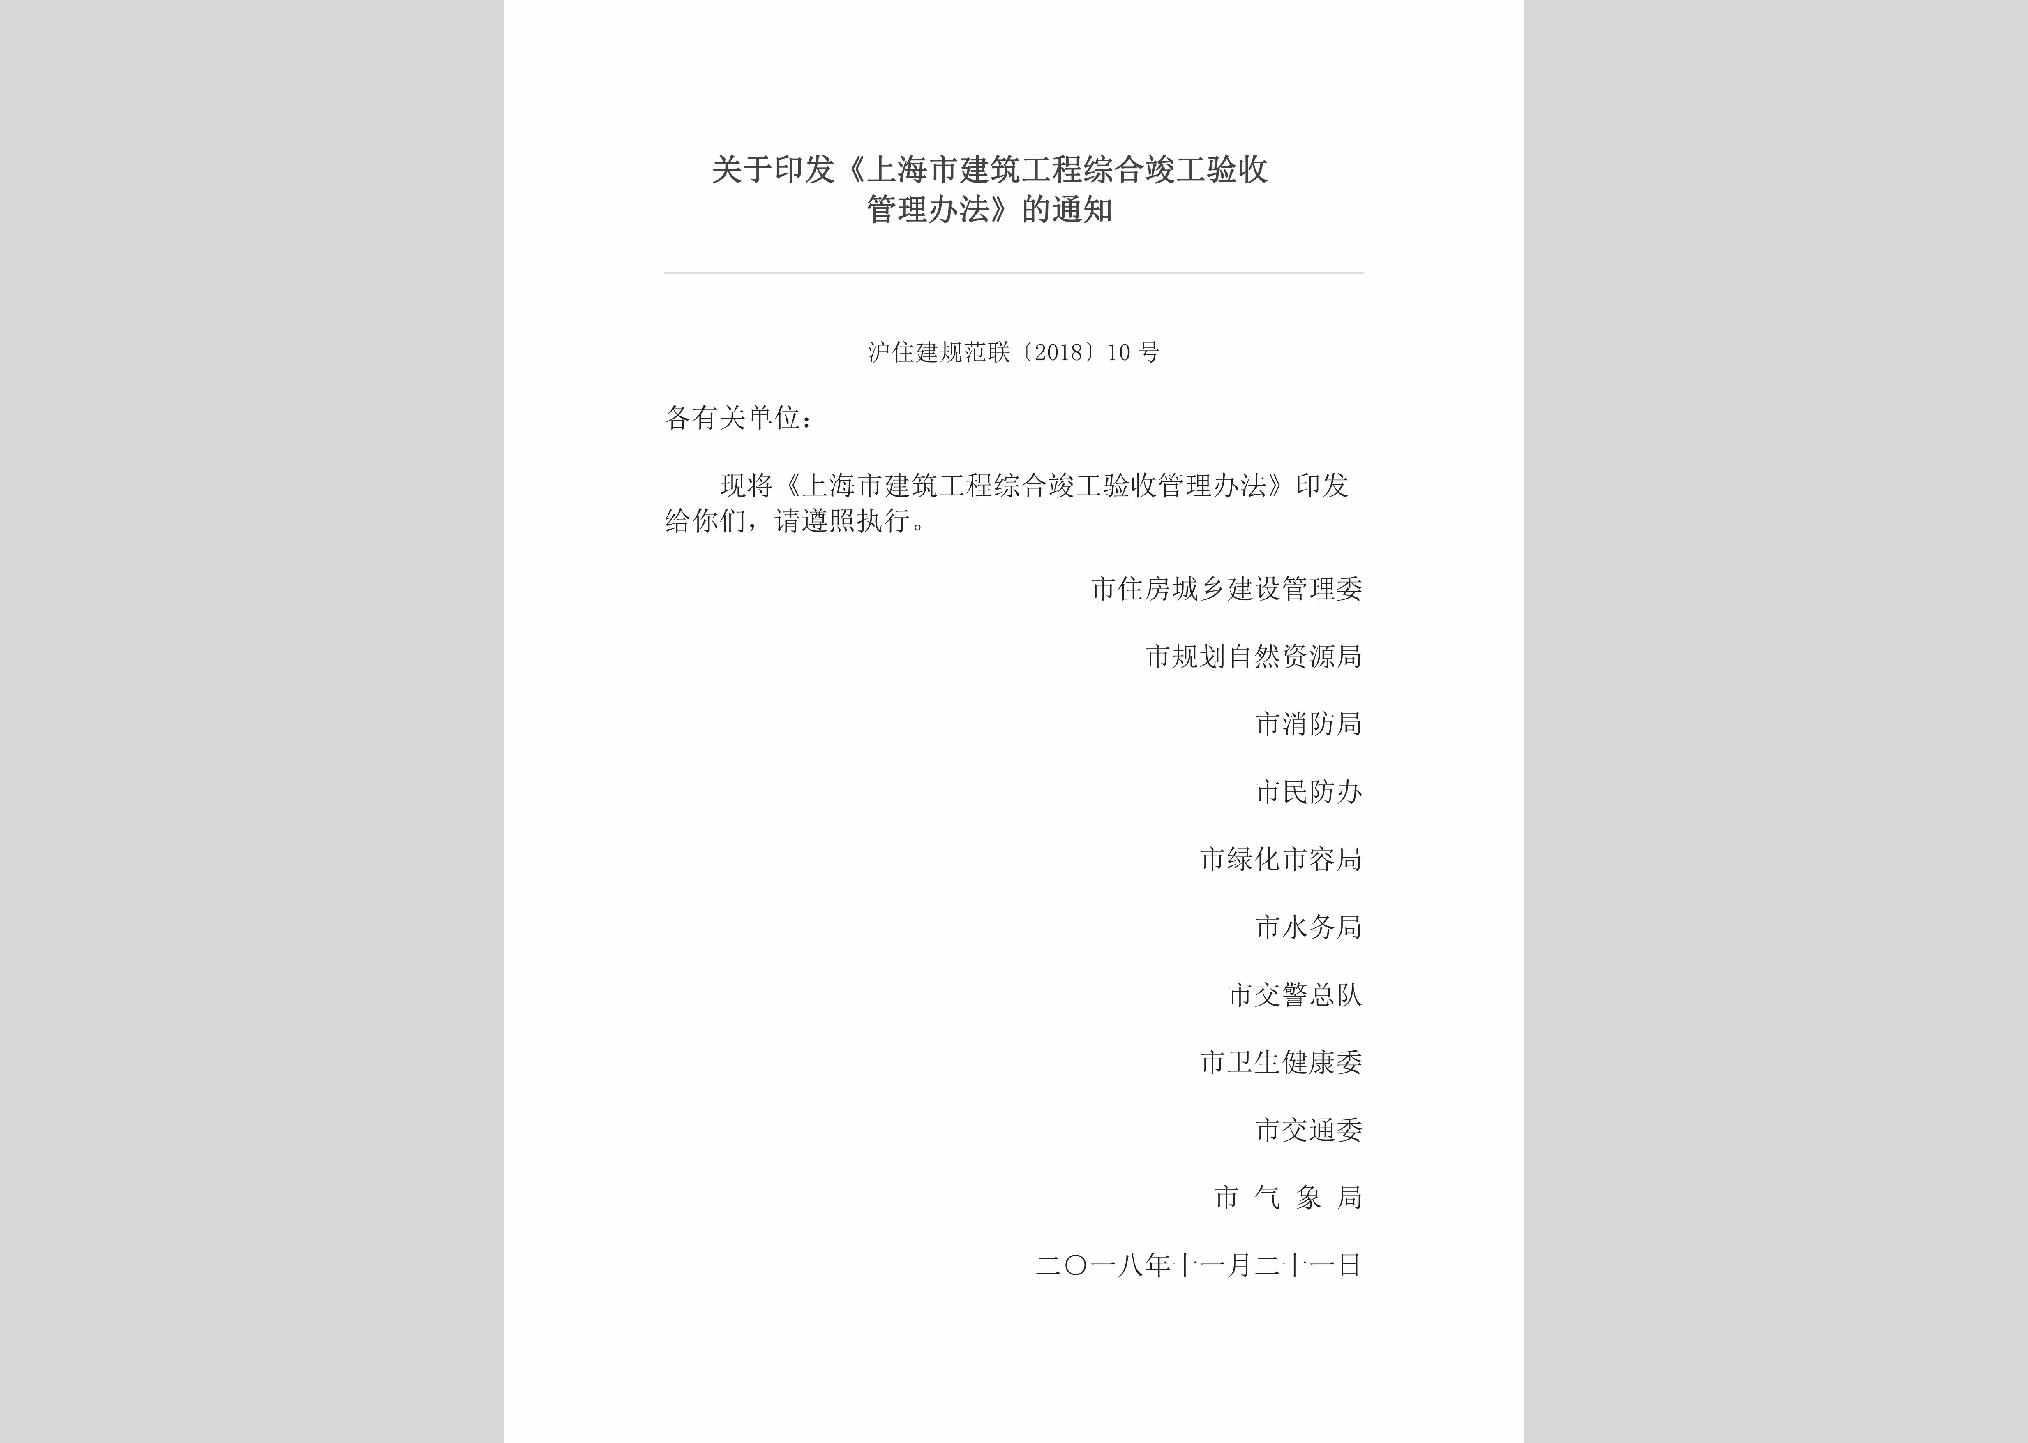 沪住建规范联[2018]10号：关于印发《上海市建筑工程综合竣工验收管理办法》的通知